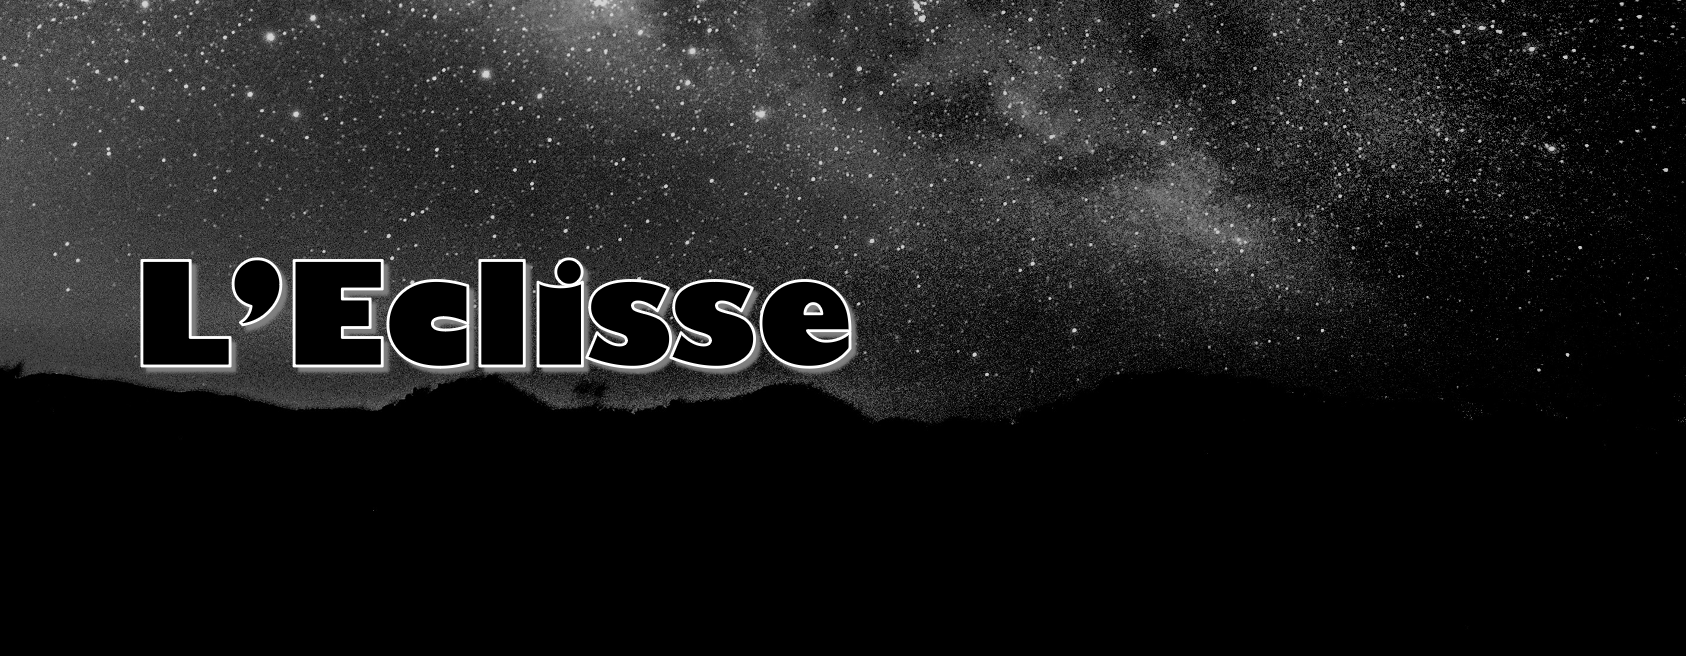 eclisse-3-ipeg